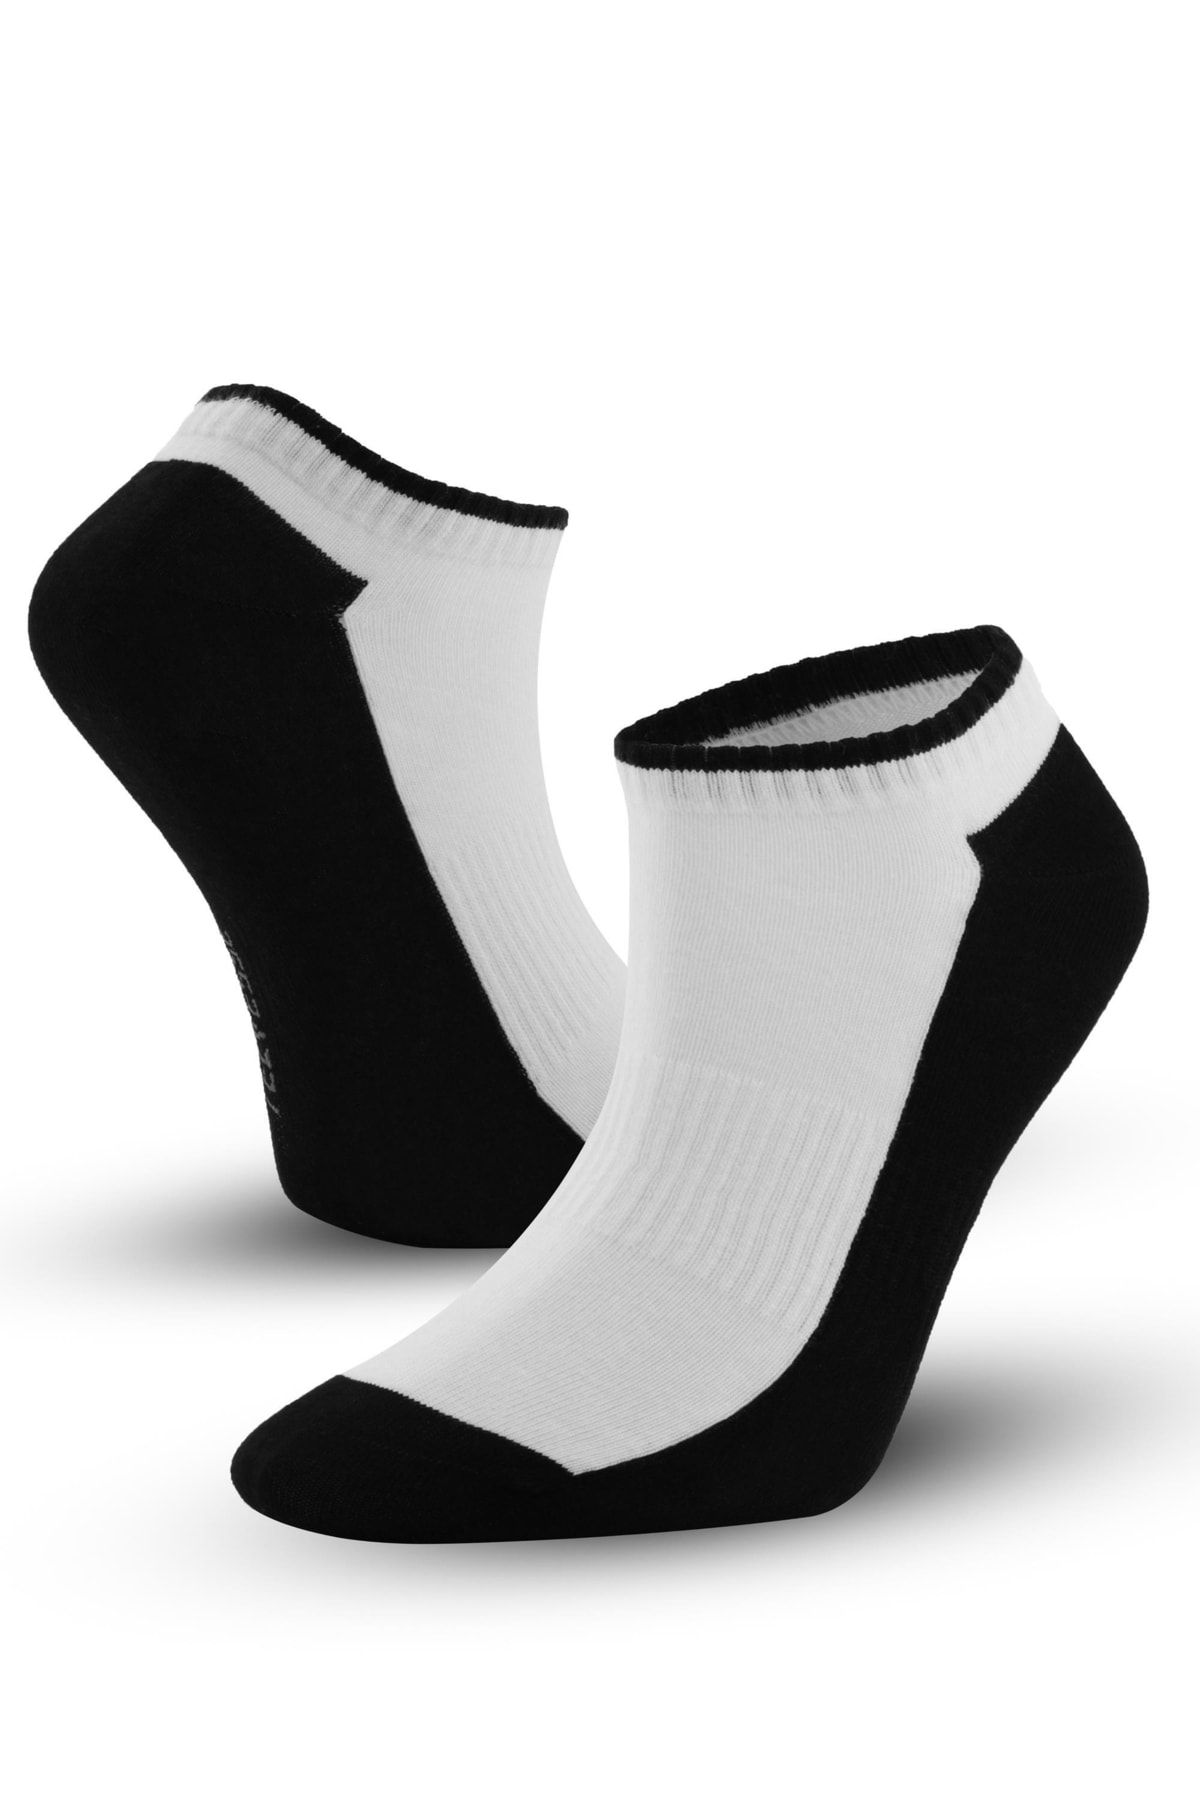 Telvesse Marcher Dikişsiz Patik Çorap Spor Kısa Çift Renkli Kısa Konçlu Spor Çorabı Siyah-beyaz